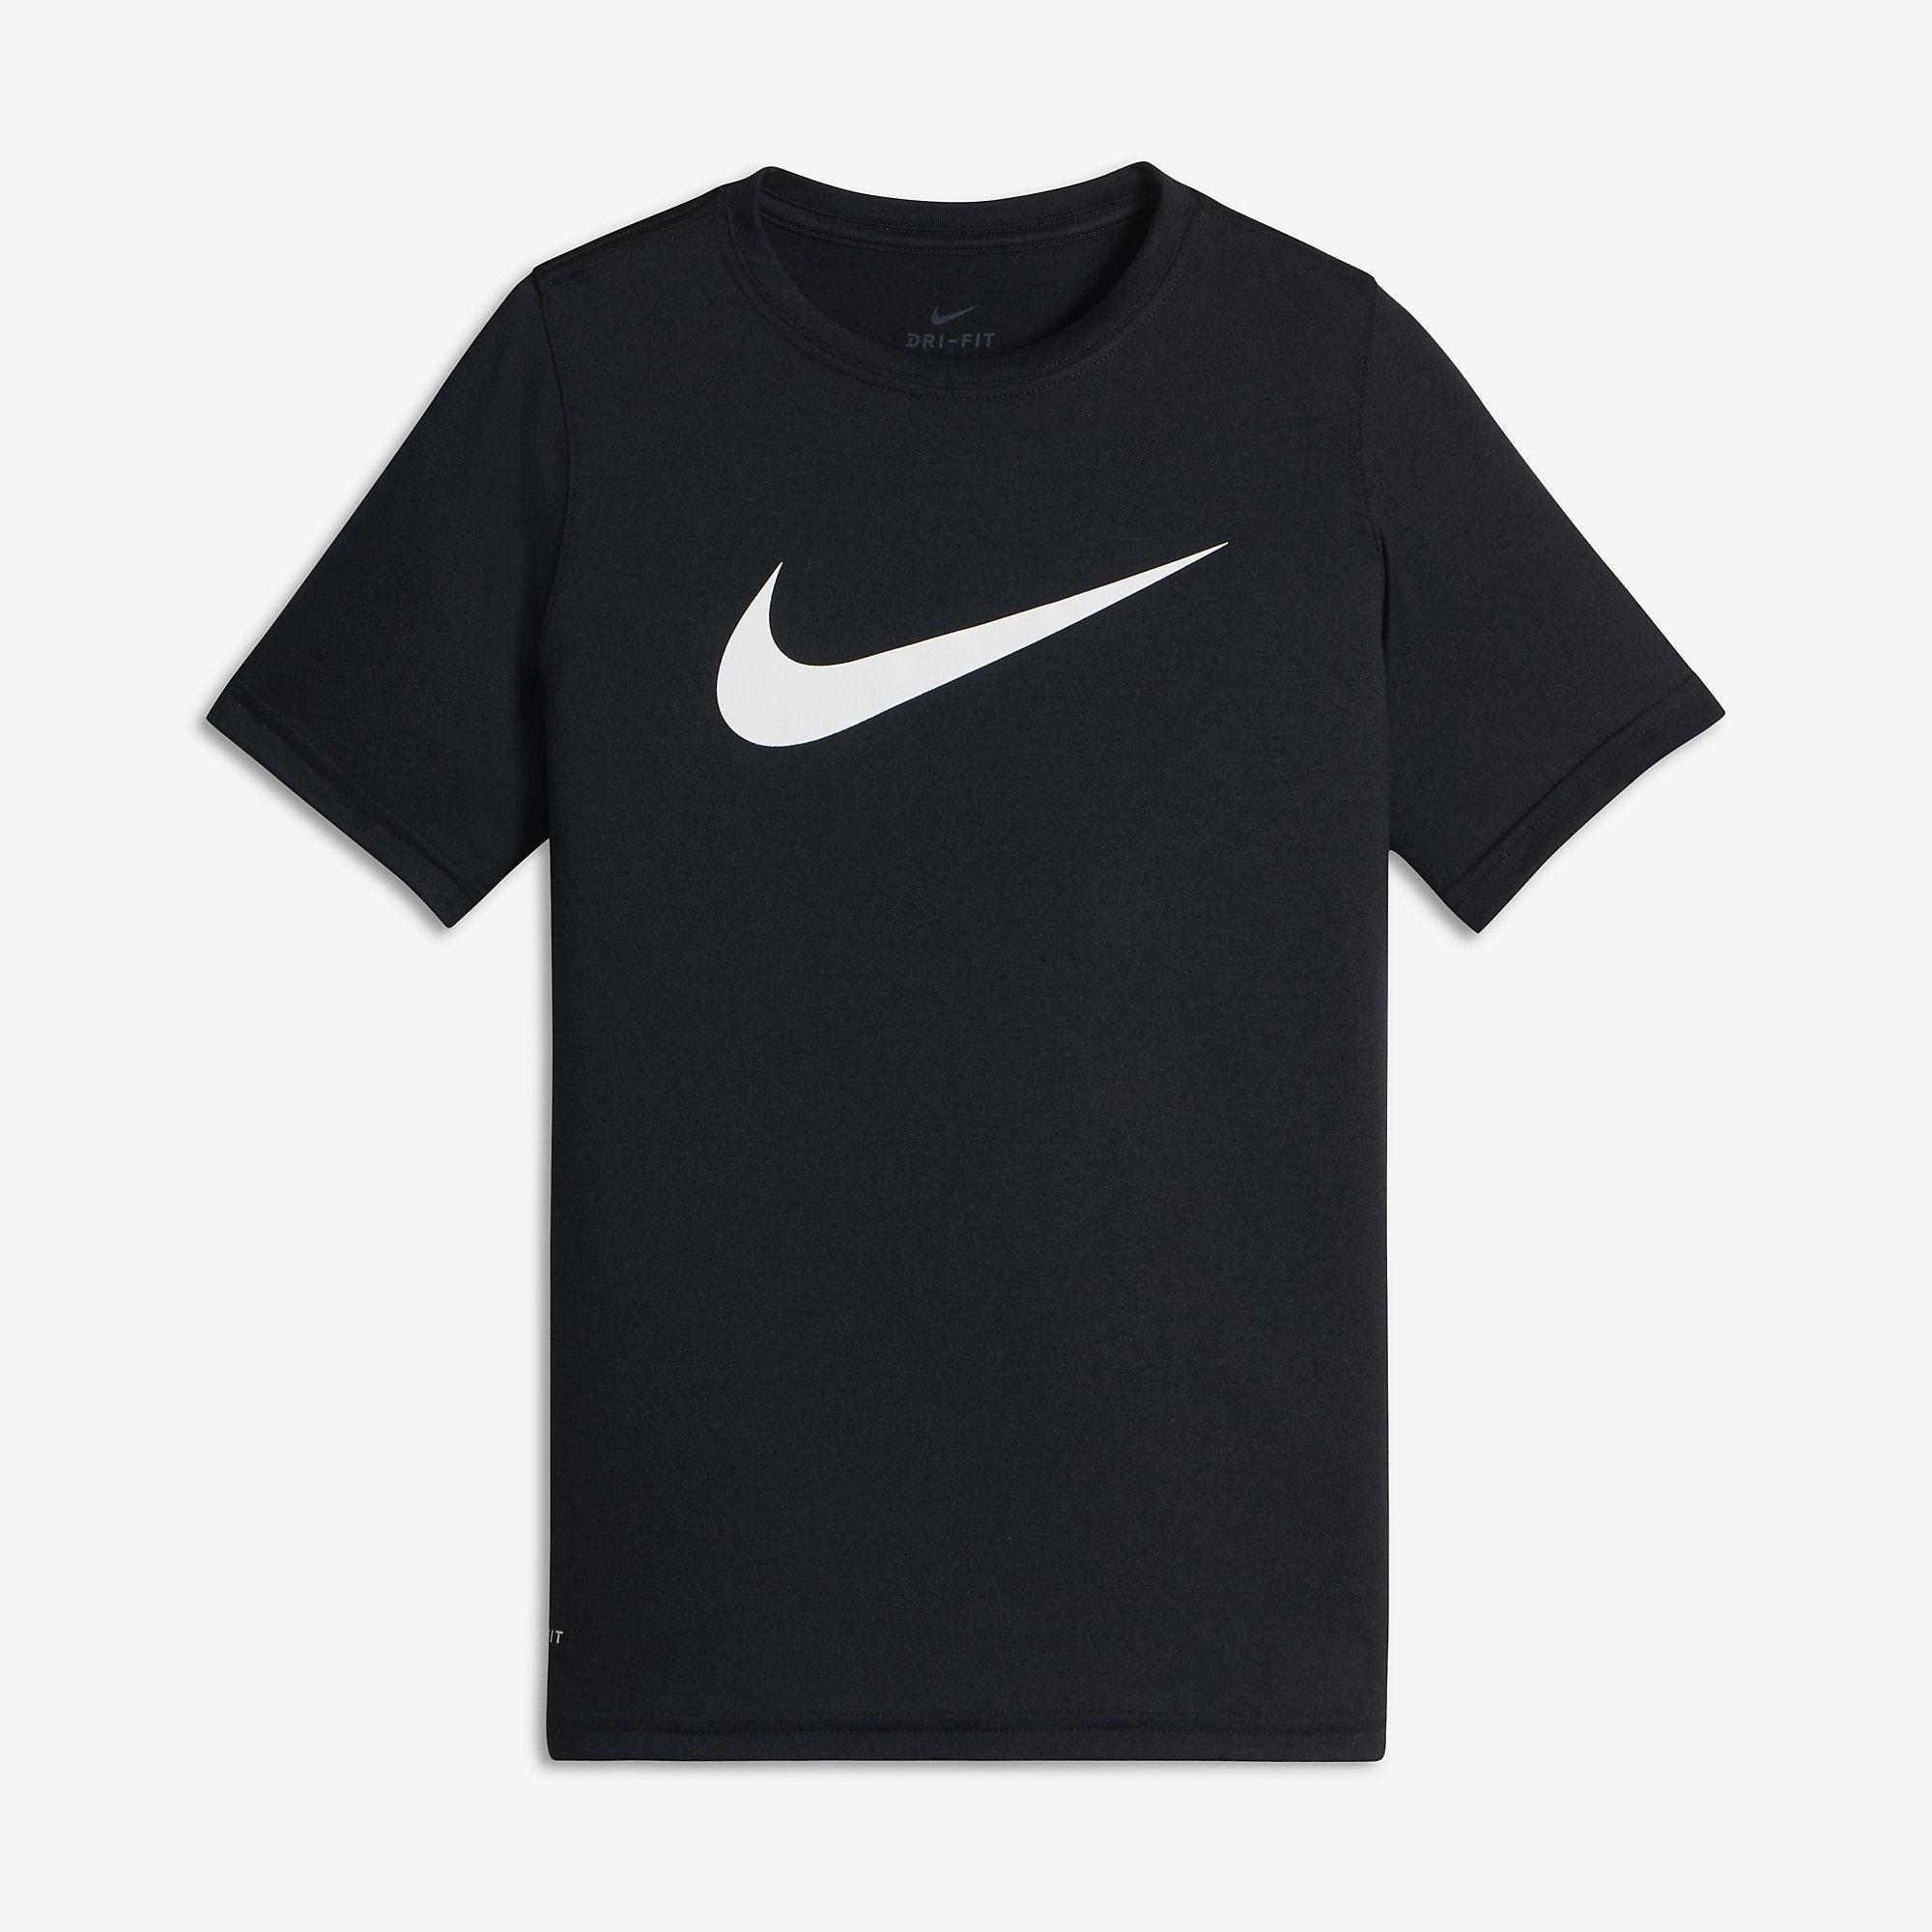 Nike Boys Dry Training T-Shirt - Black - Tennisnuts.com